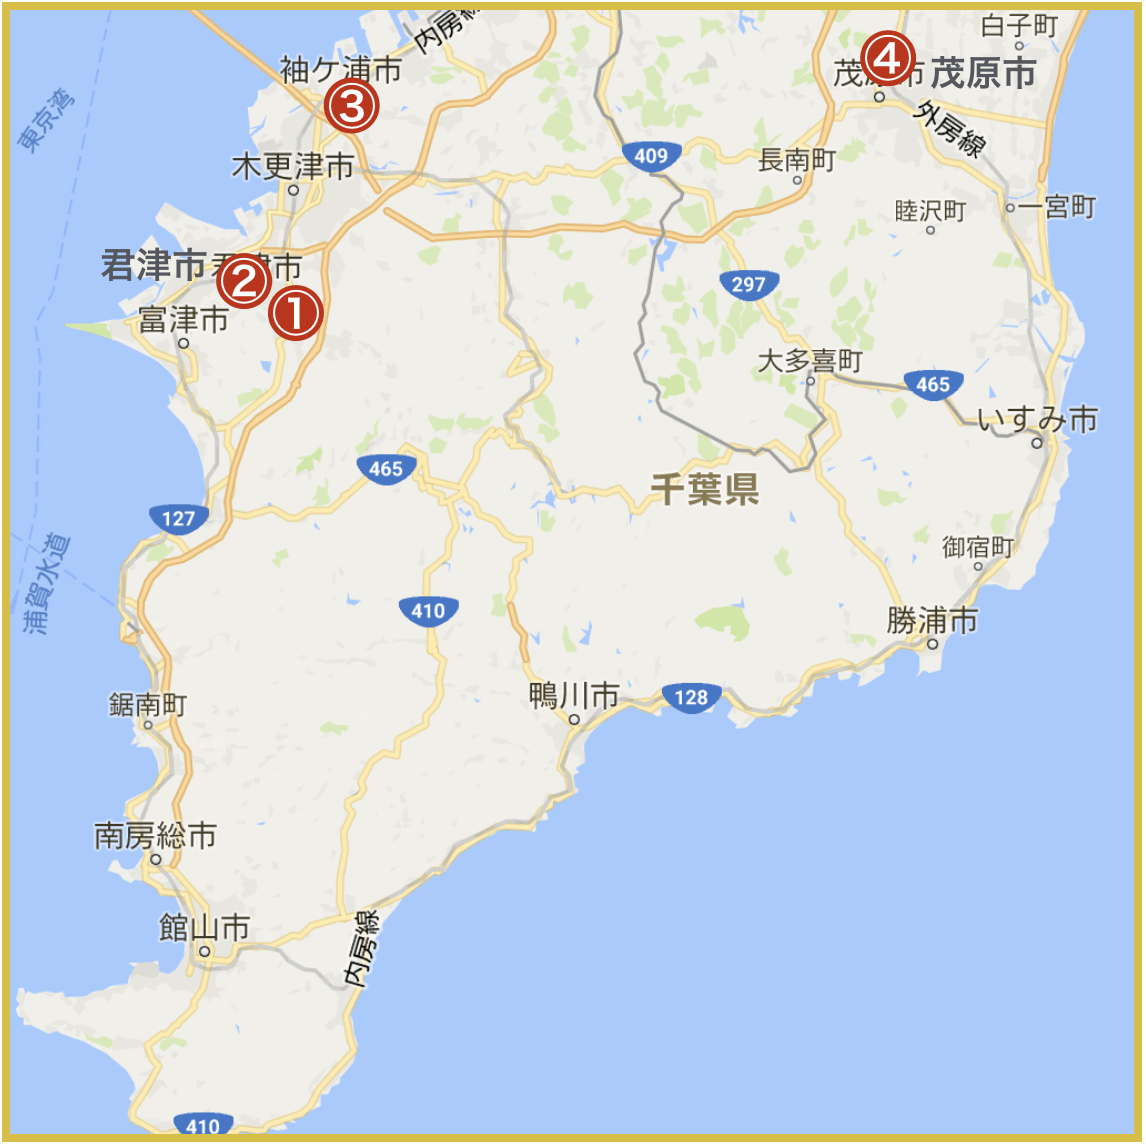 千葉県南地域にあるプロミス店舗・ATMの位置